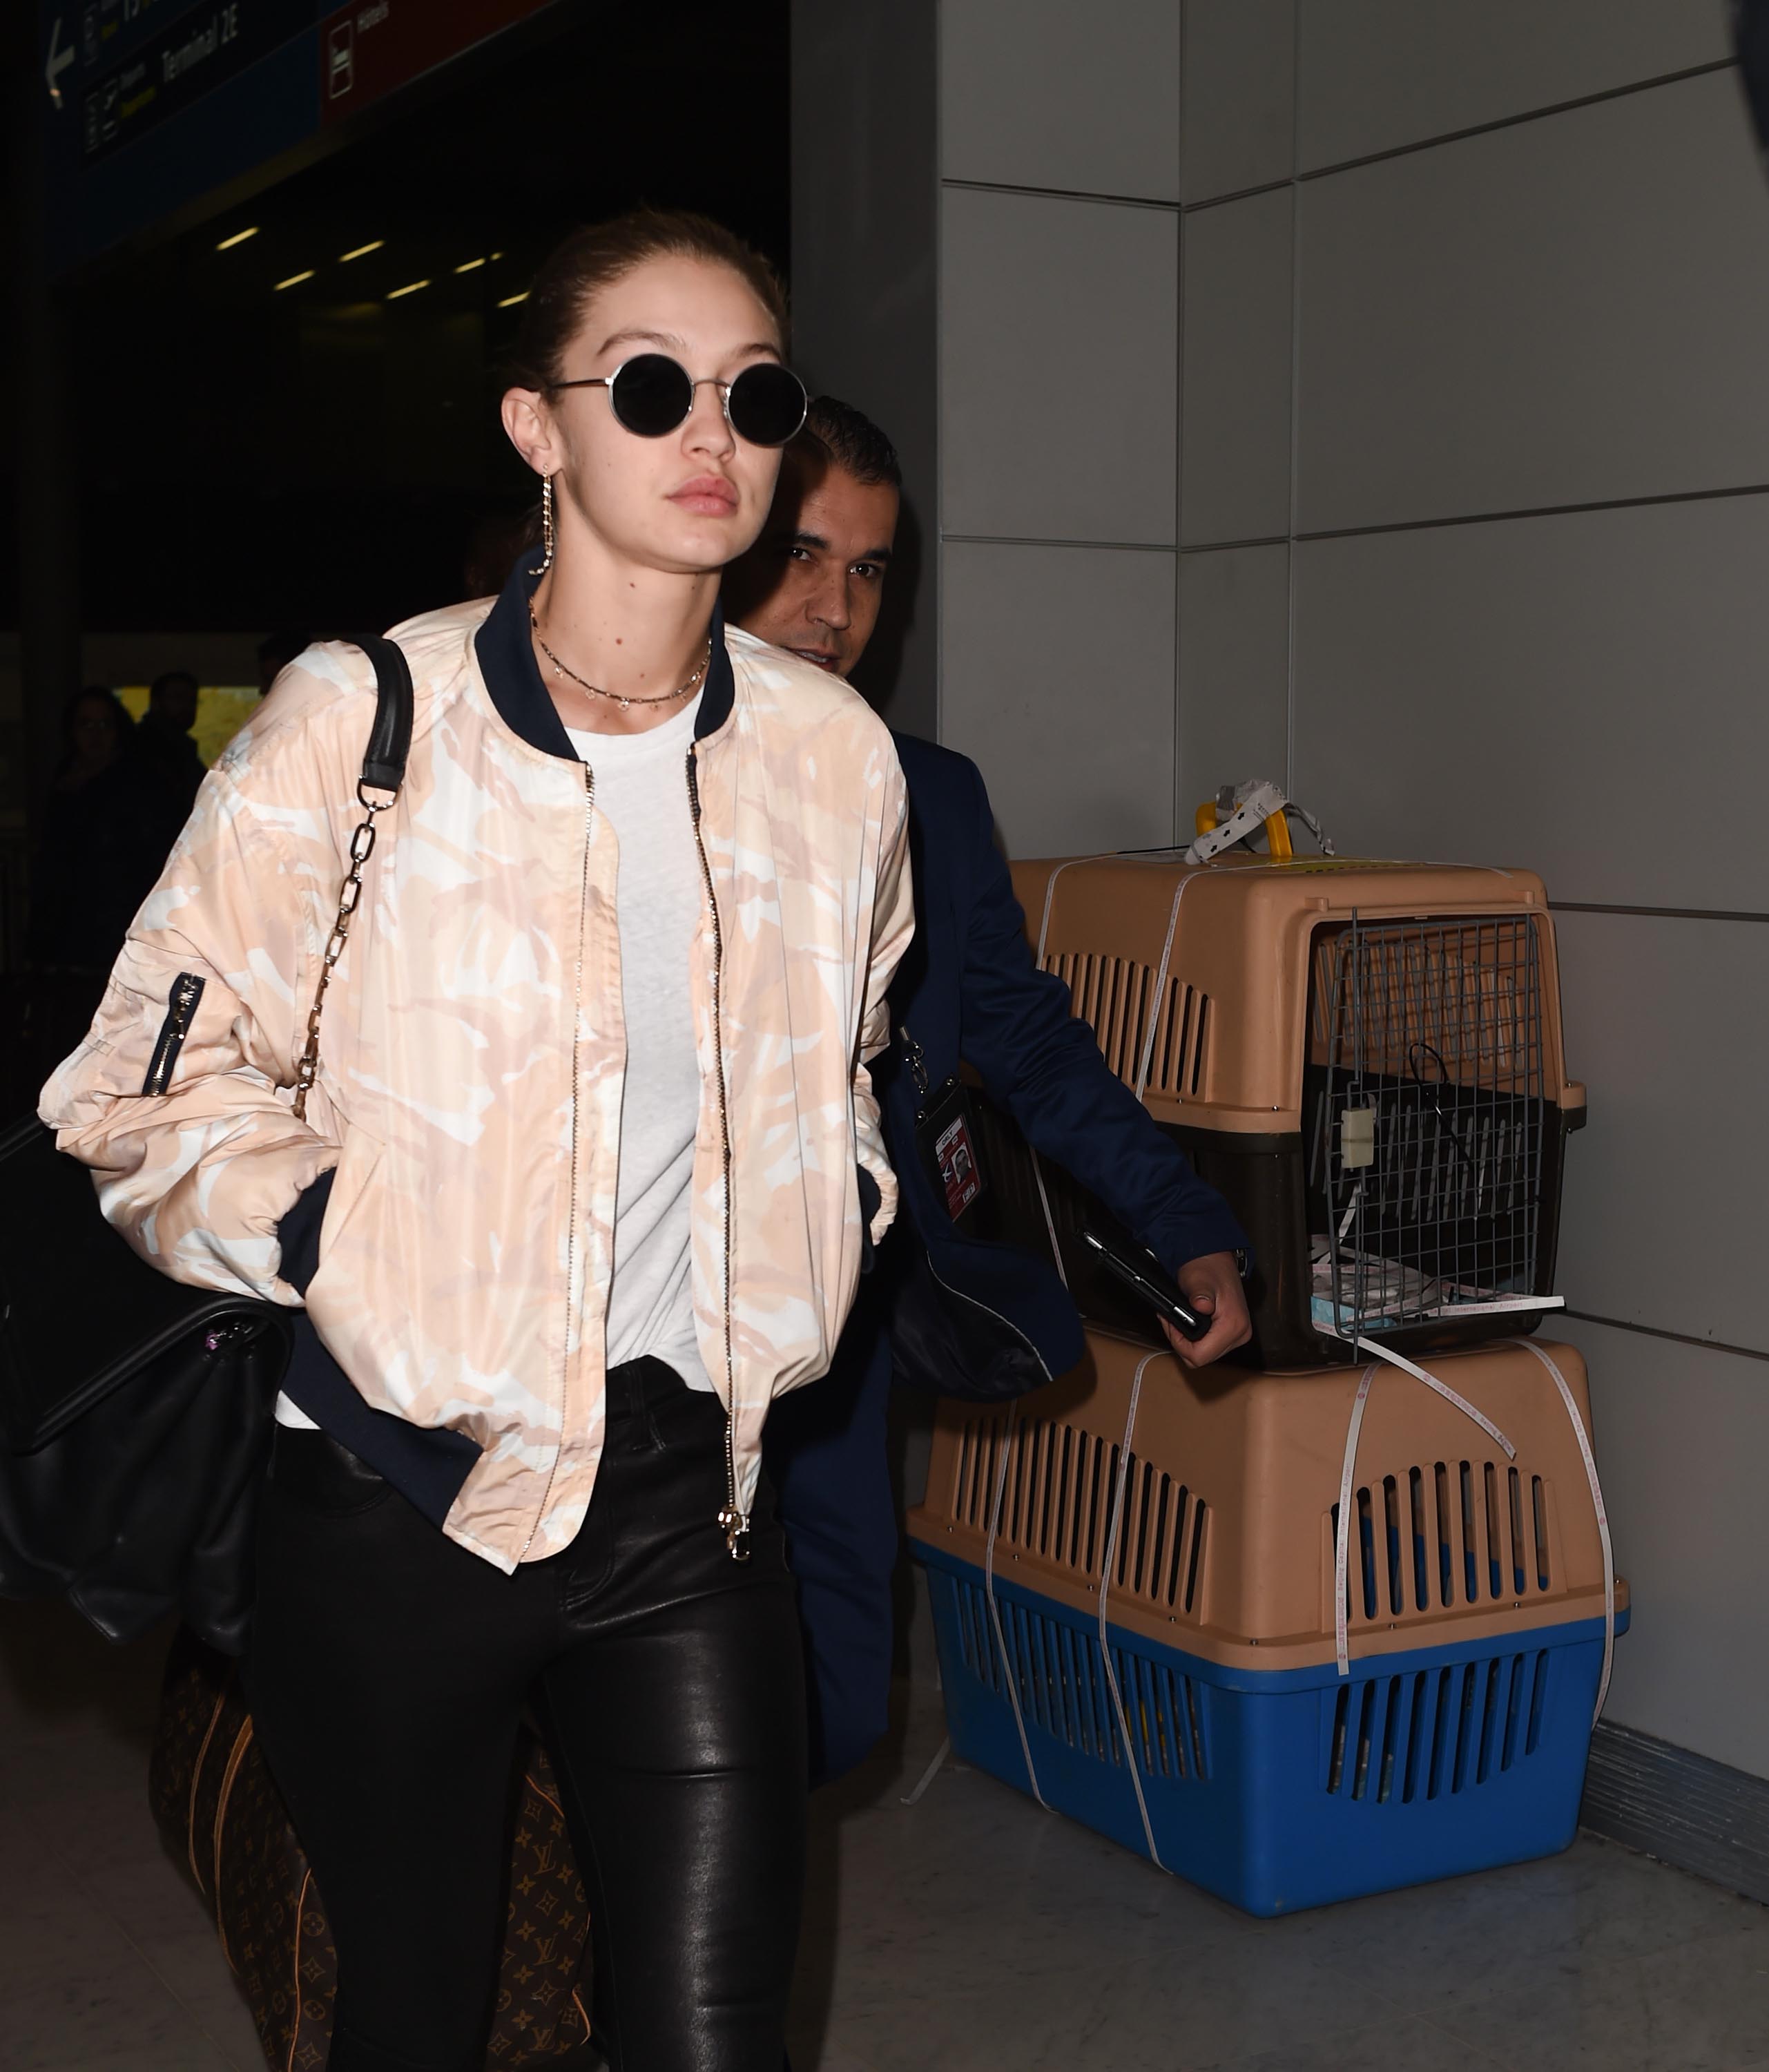 Gigi Hadid arrives at Paris CDG Airport